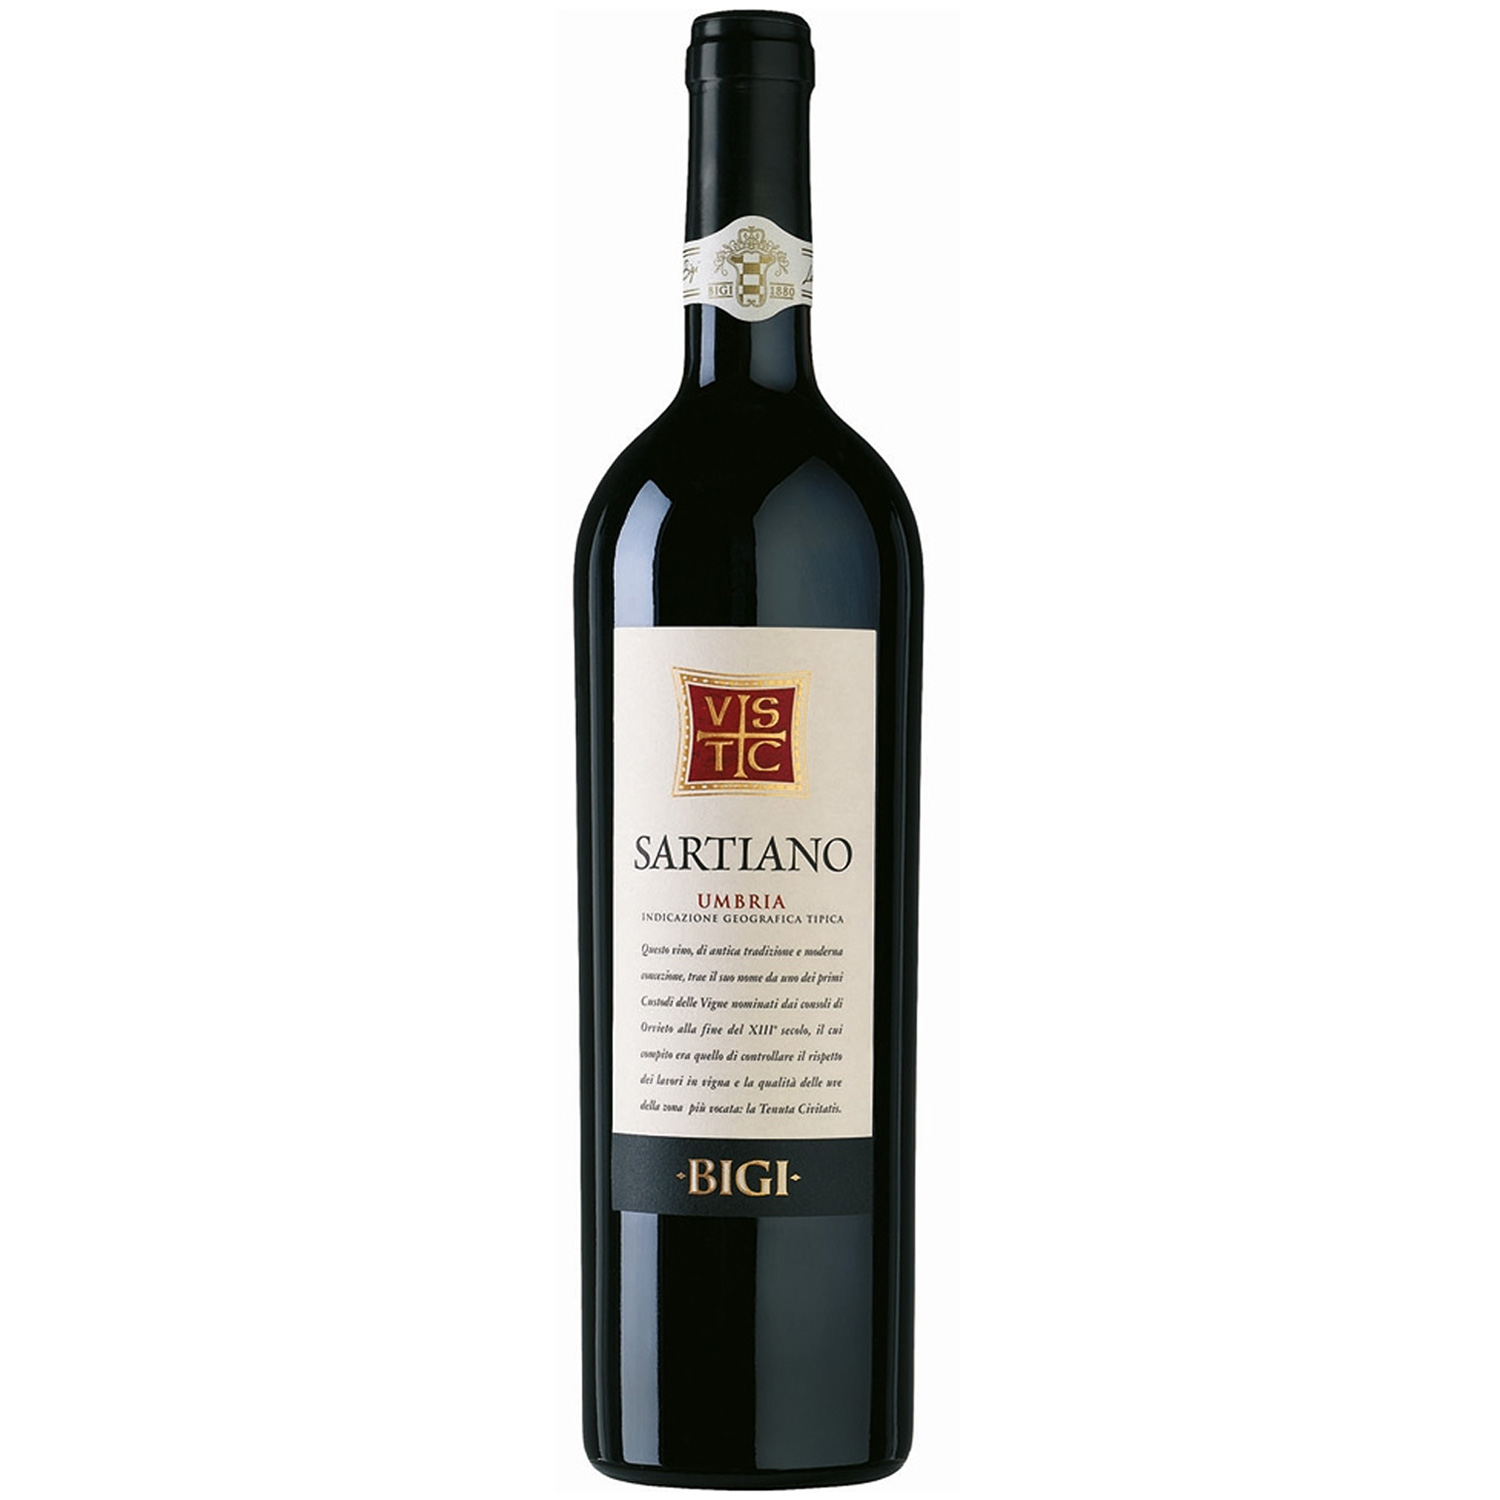 Italienischer Rotwein Sartiano Umbria IGT 2017 BIGI hier bei Vinum Nobile  online